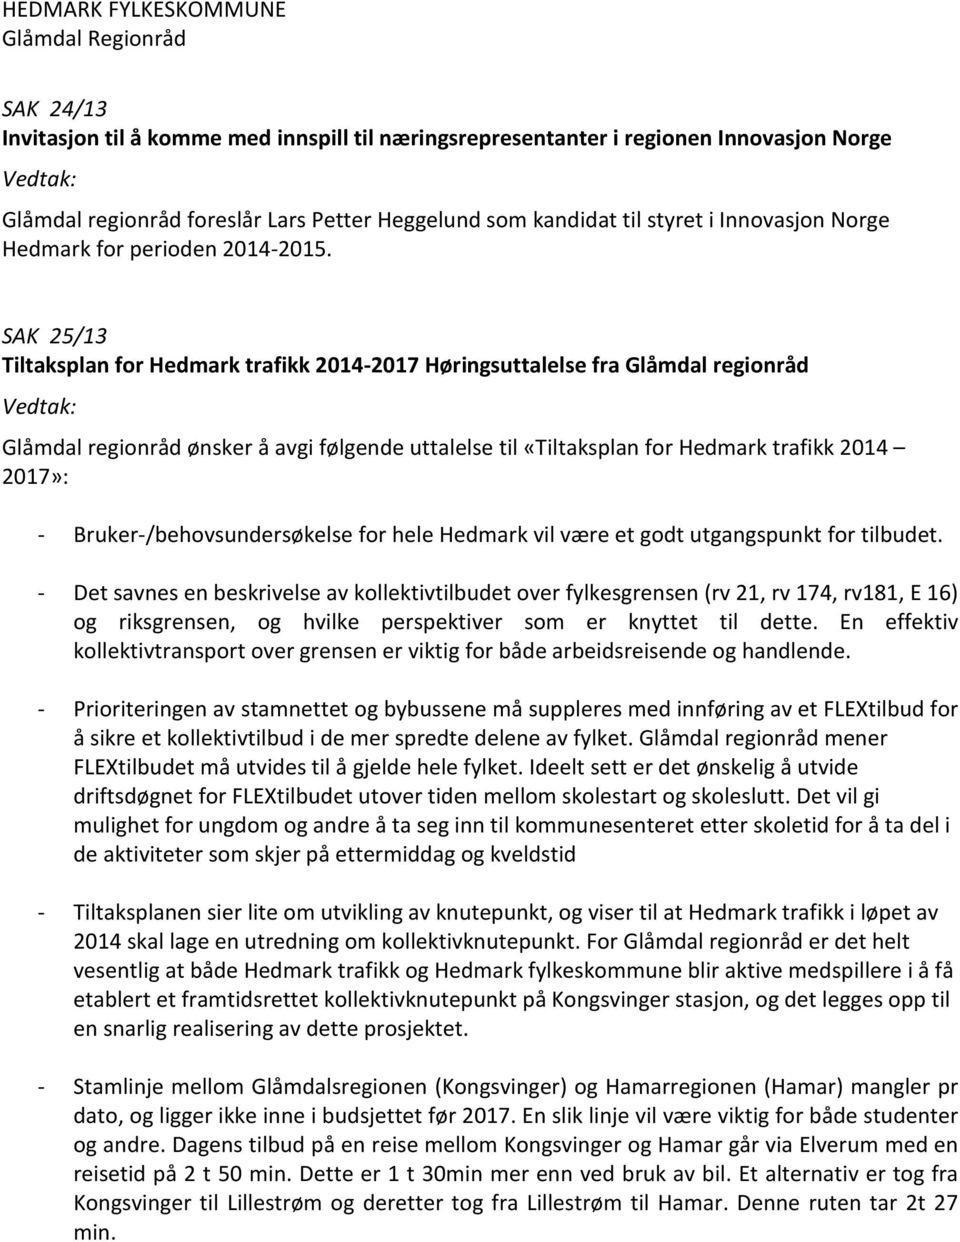 SAK 25/13 Tiltaksplan for Hedmark trafikk 2014-2017 Høringsuttalelse fra Glåmdal regionråd Glåmdal regionråd ønsker å avgi følgende uttalelse til «Tiltaksplan for Hedmark trafikk 2014 2017»: -